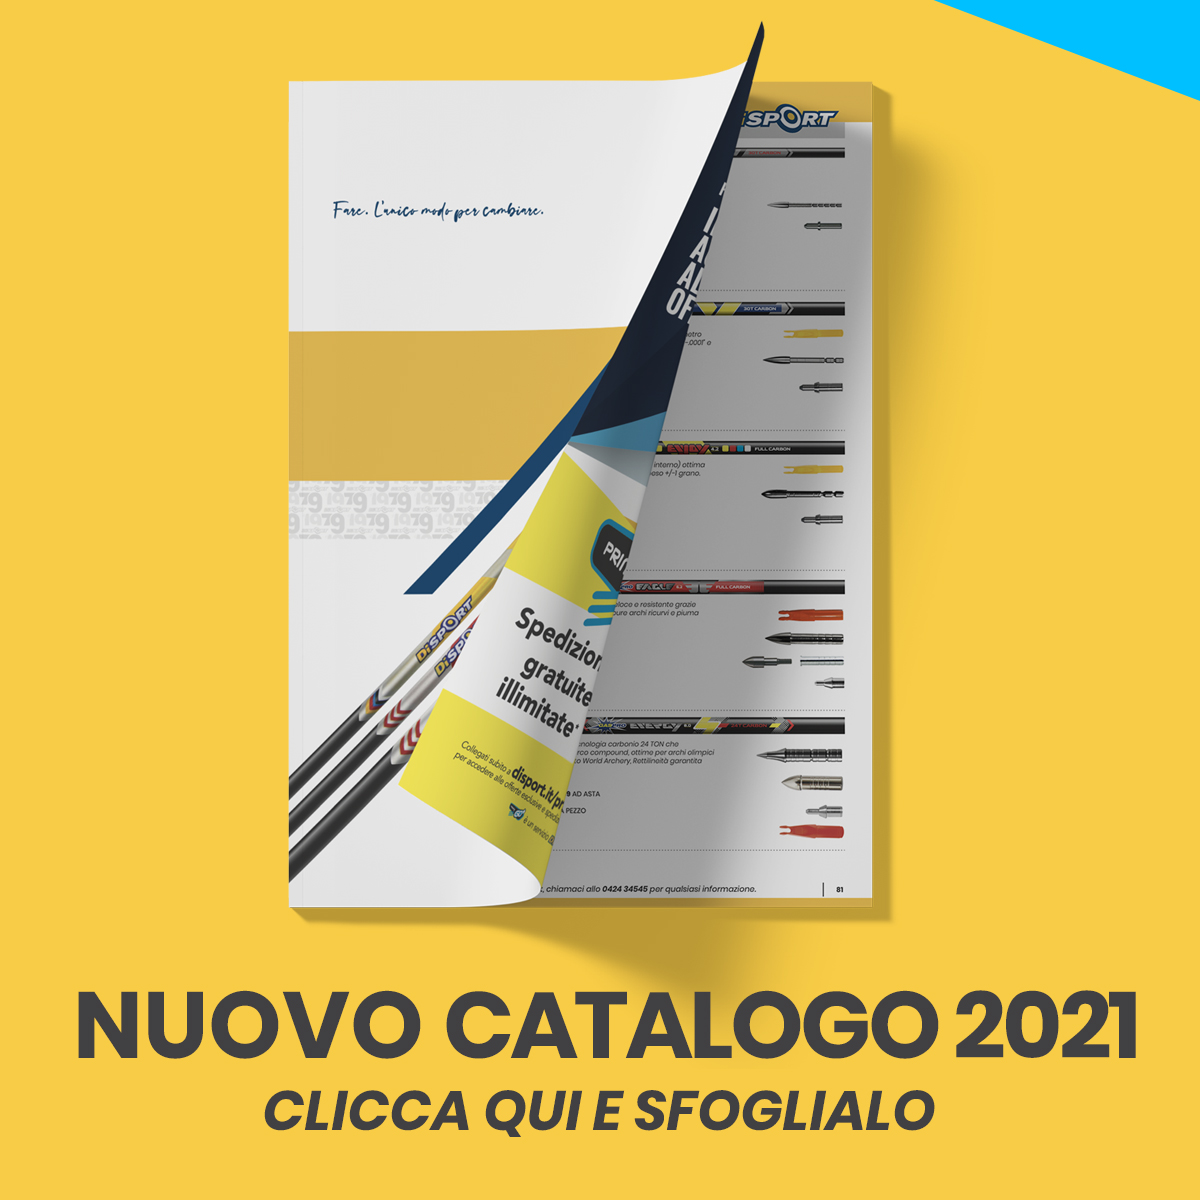 NUOVO CATALOGO DISPORT 2021